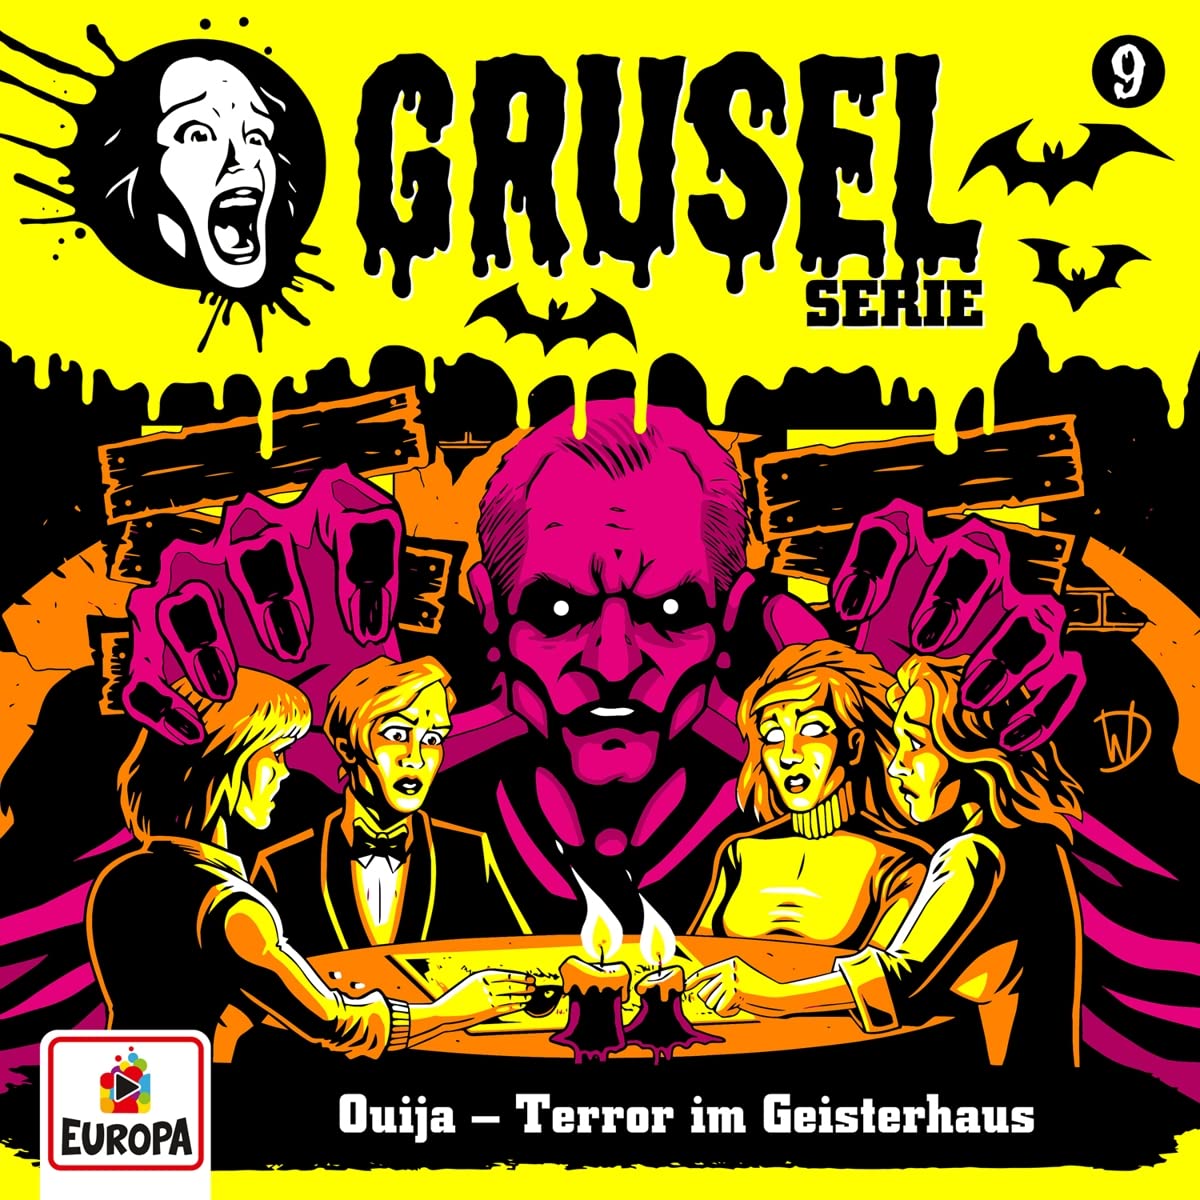 Gruselserie - Ouija - Terror im Geisterhaus